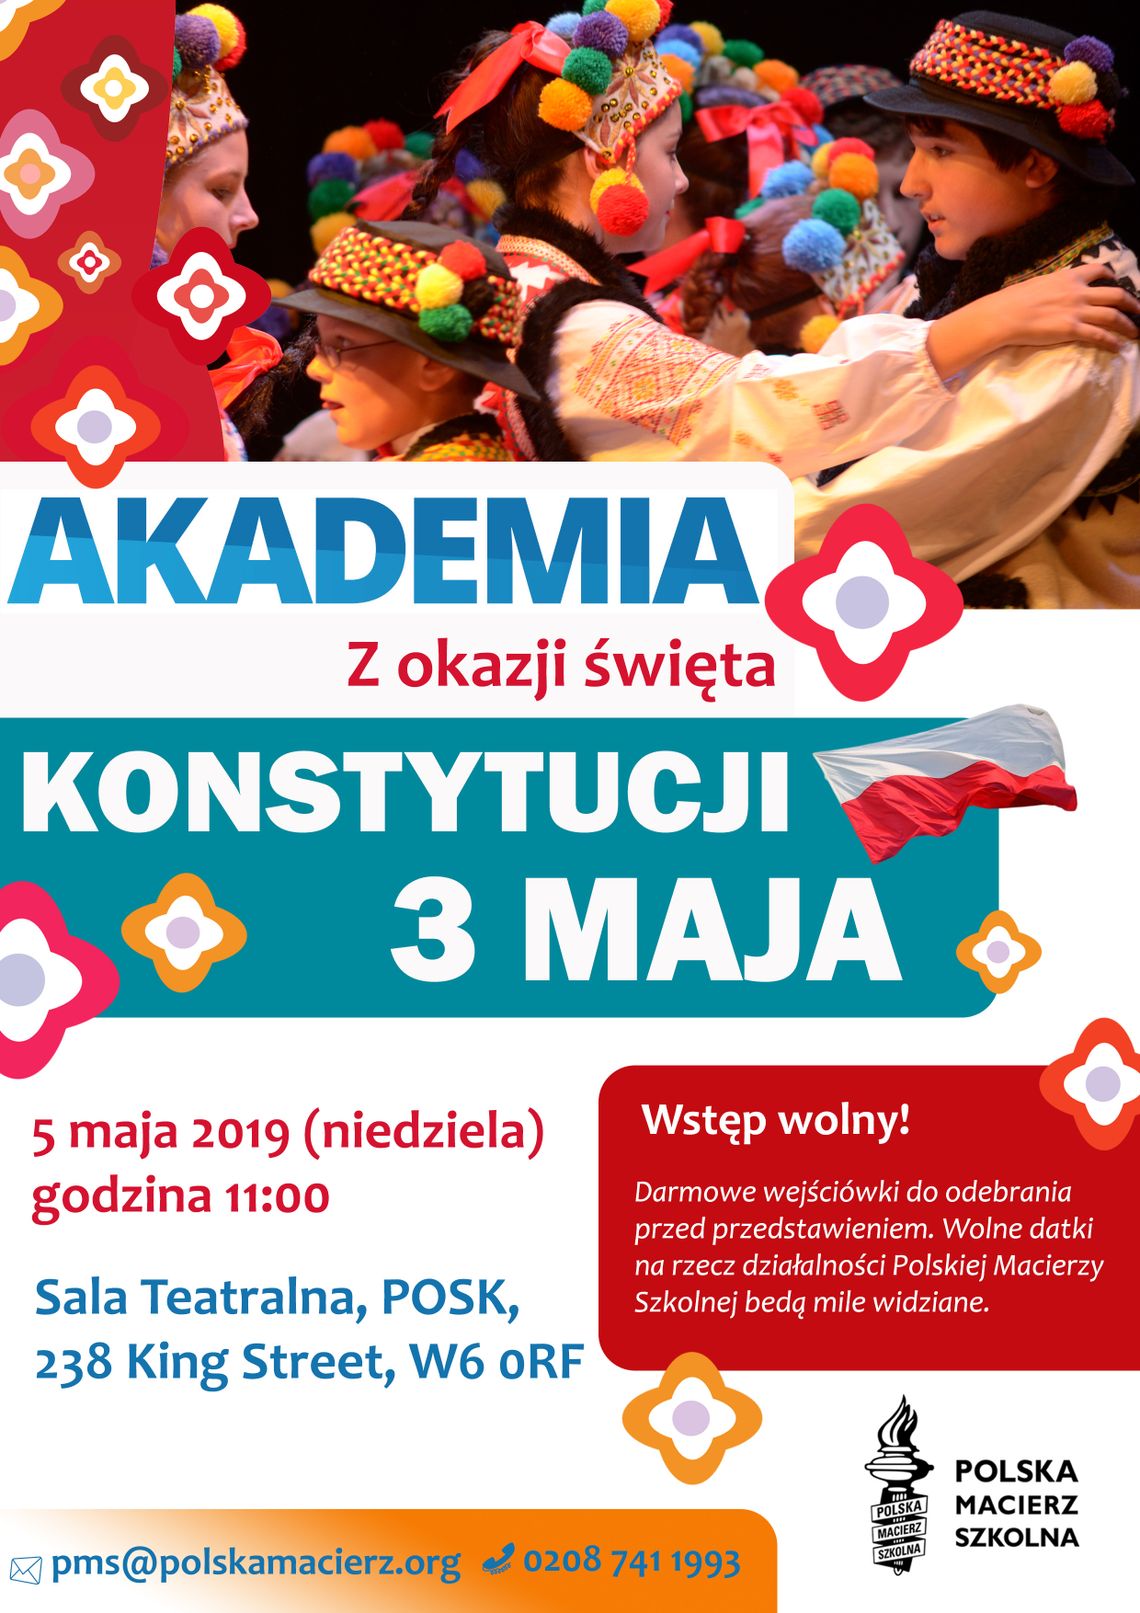 Akademia 3 Maja organizowana przez Polską Macierz Szkolną